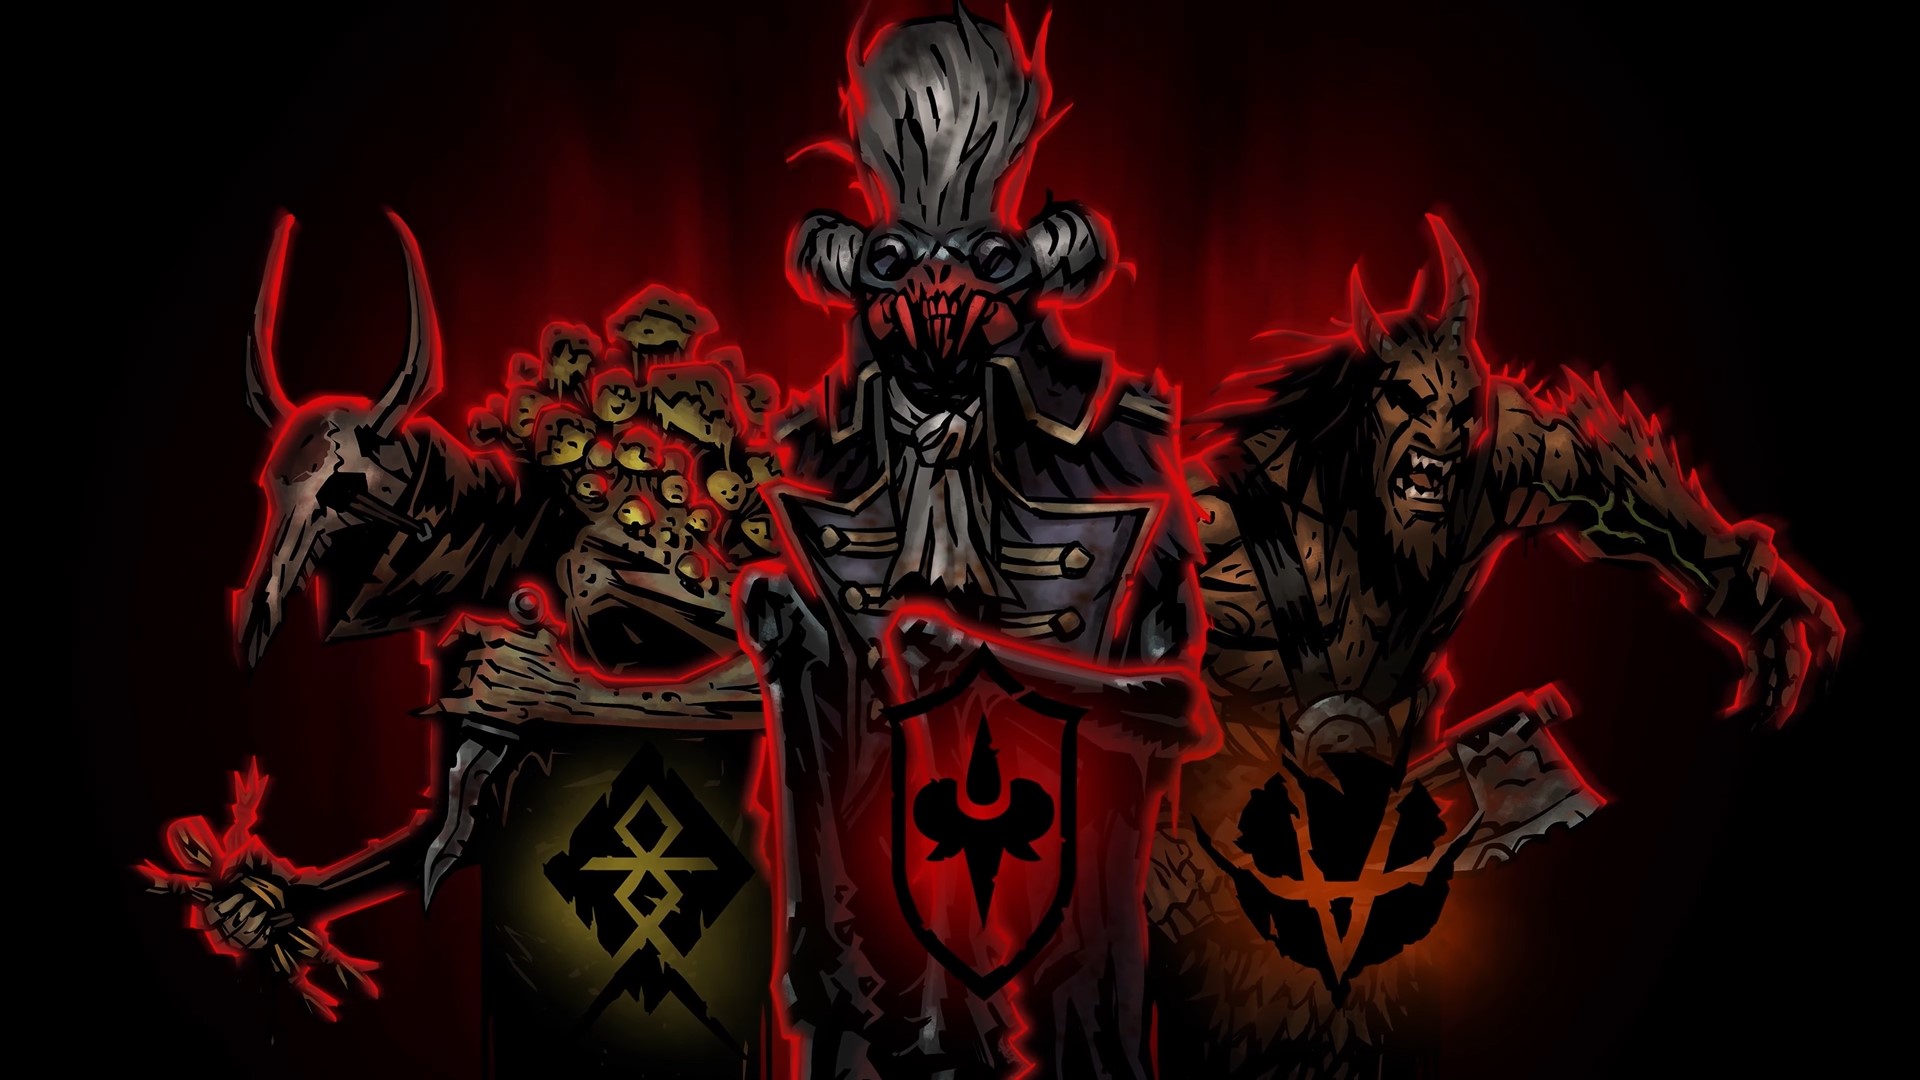 Red Hook Studios heeft een update aangekondigd voor Darkest Dungeon 2, die een nieuwe spelmodus aan de game toevoegt - Kingdoms genaamd